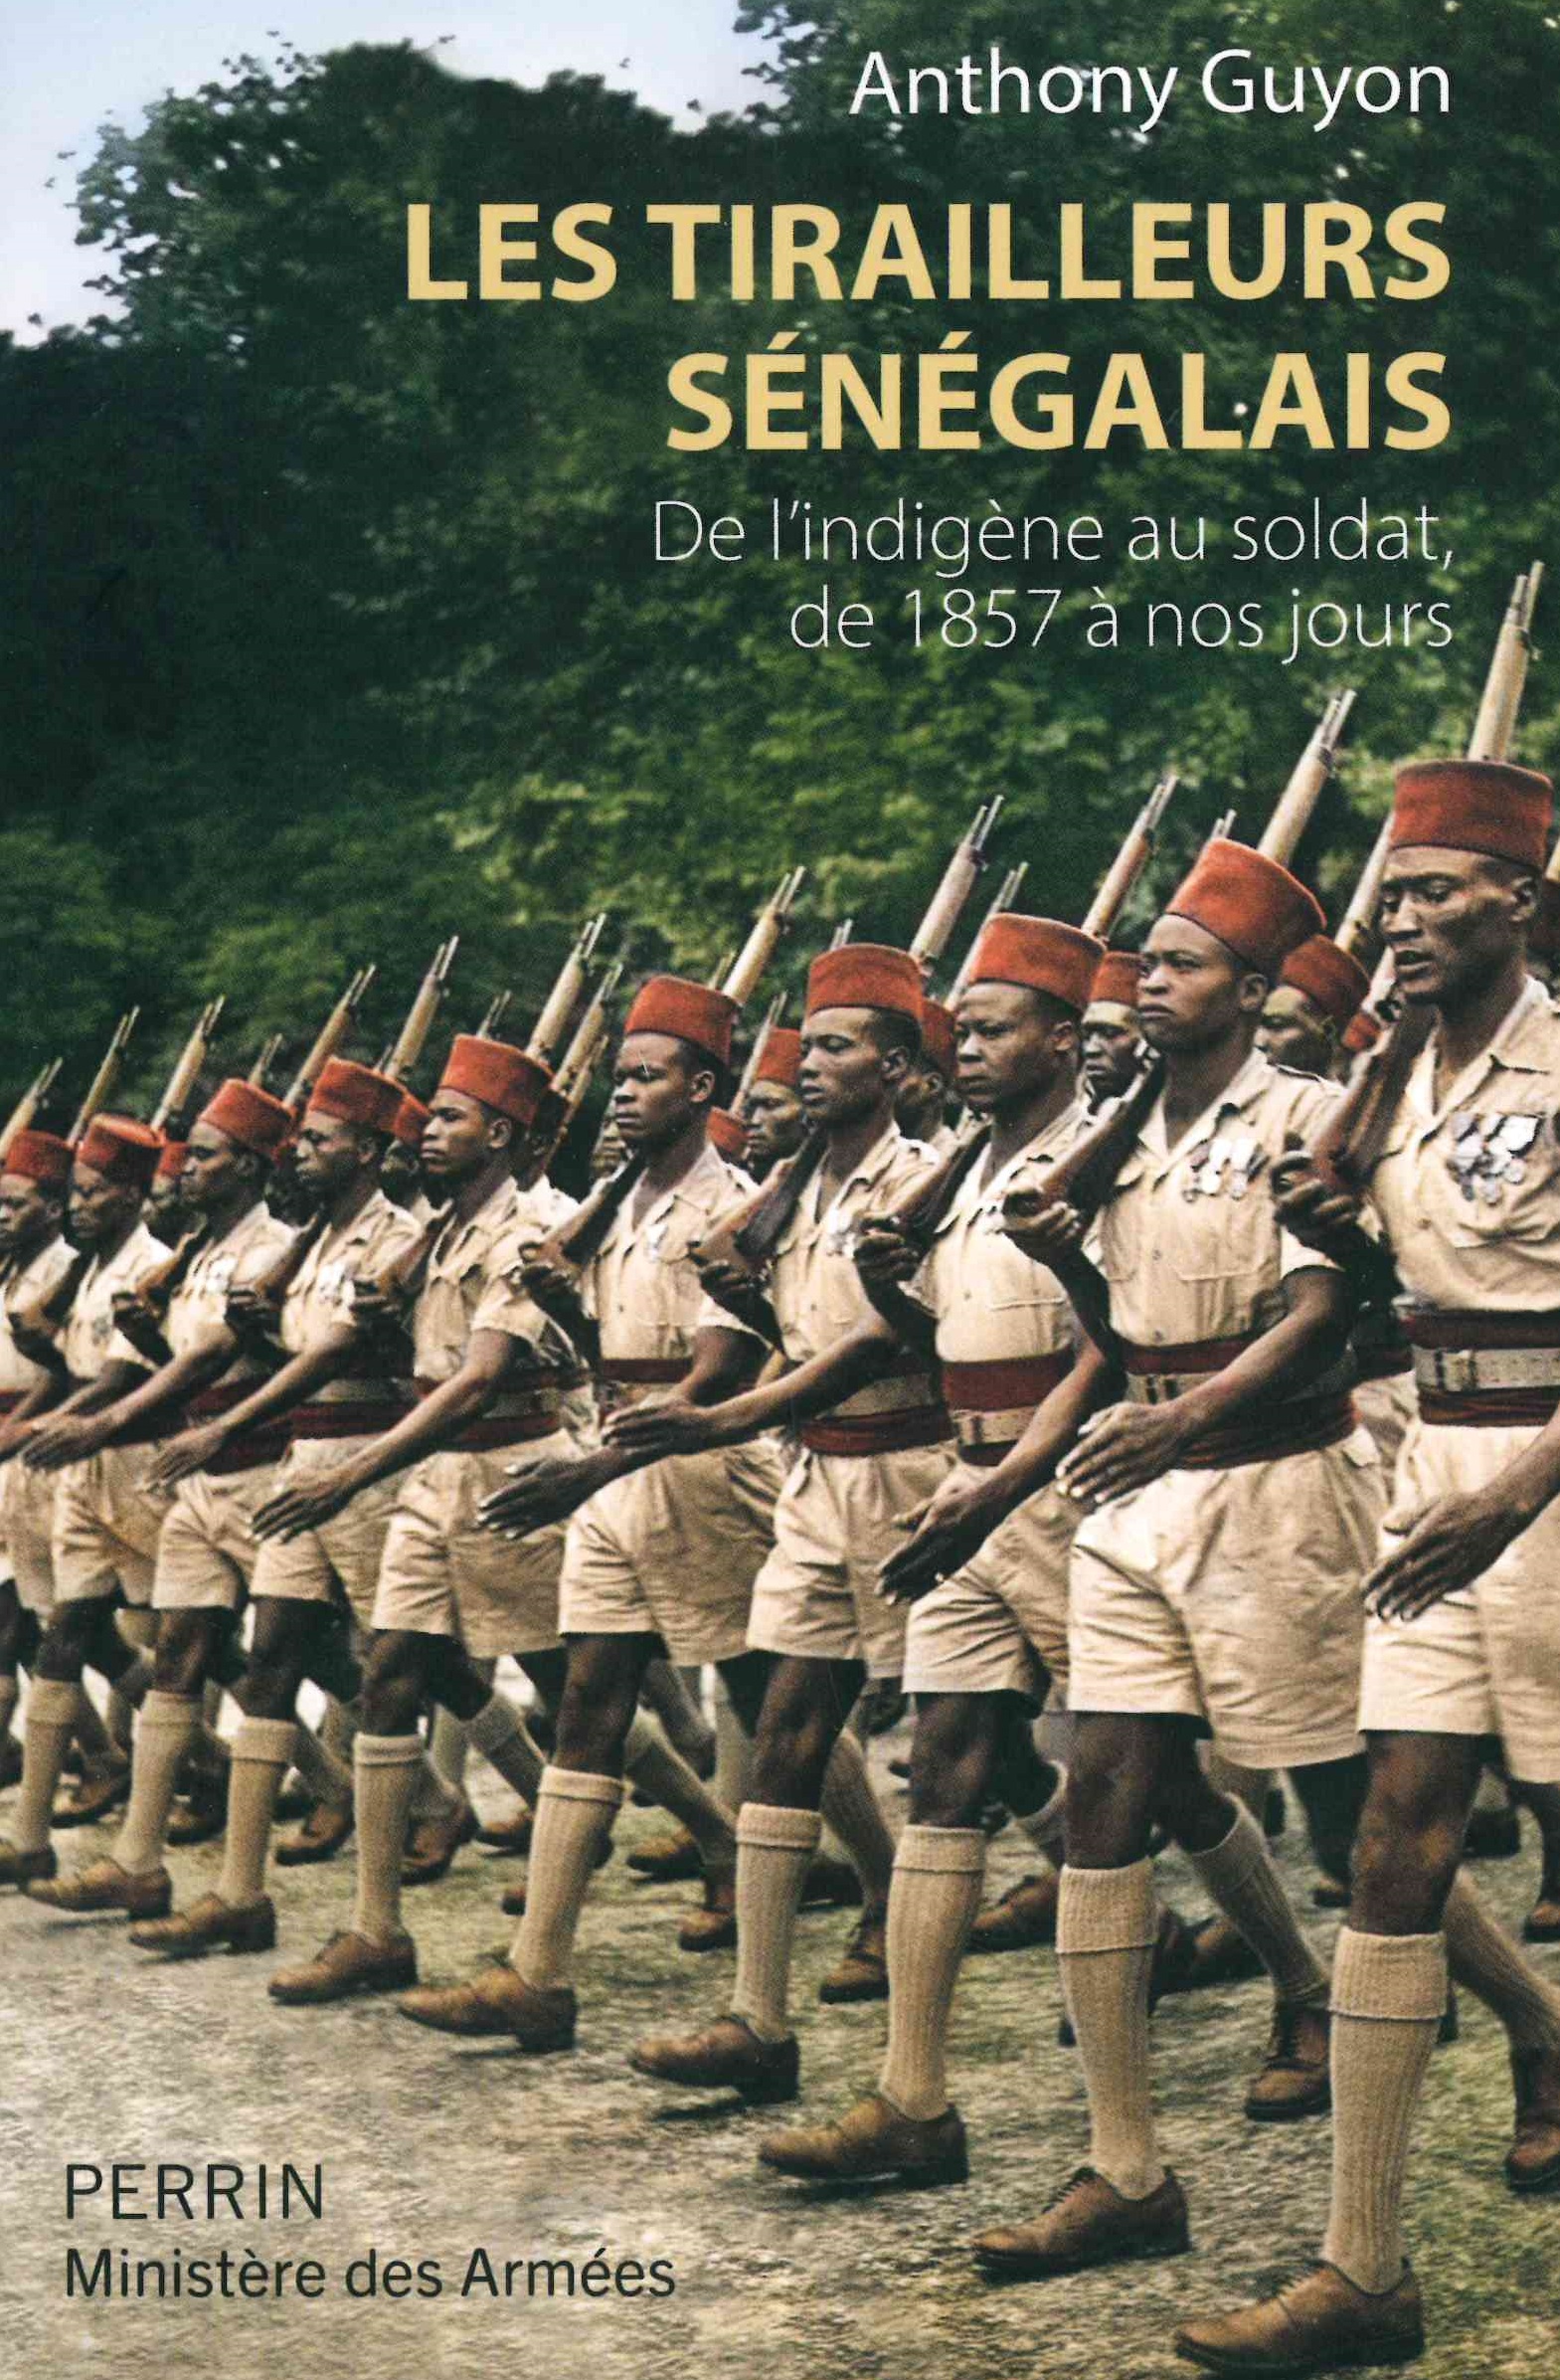 Guyon (Anthony), Les tirailleurs sénégalais. De l'indigène au soldat de 1857 à nos jours